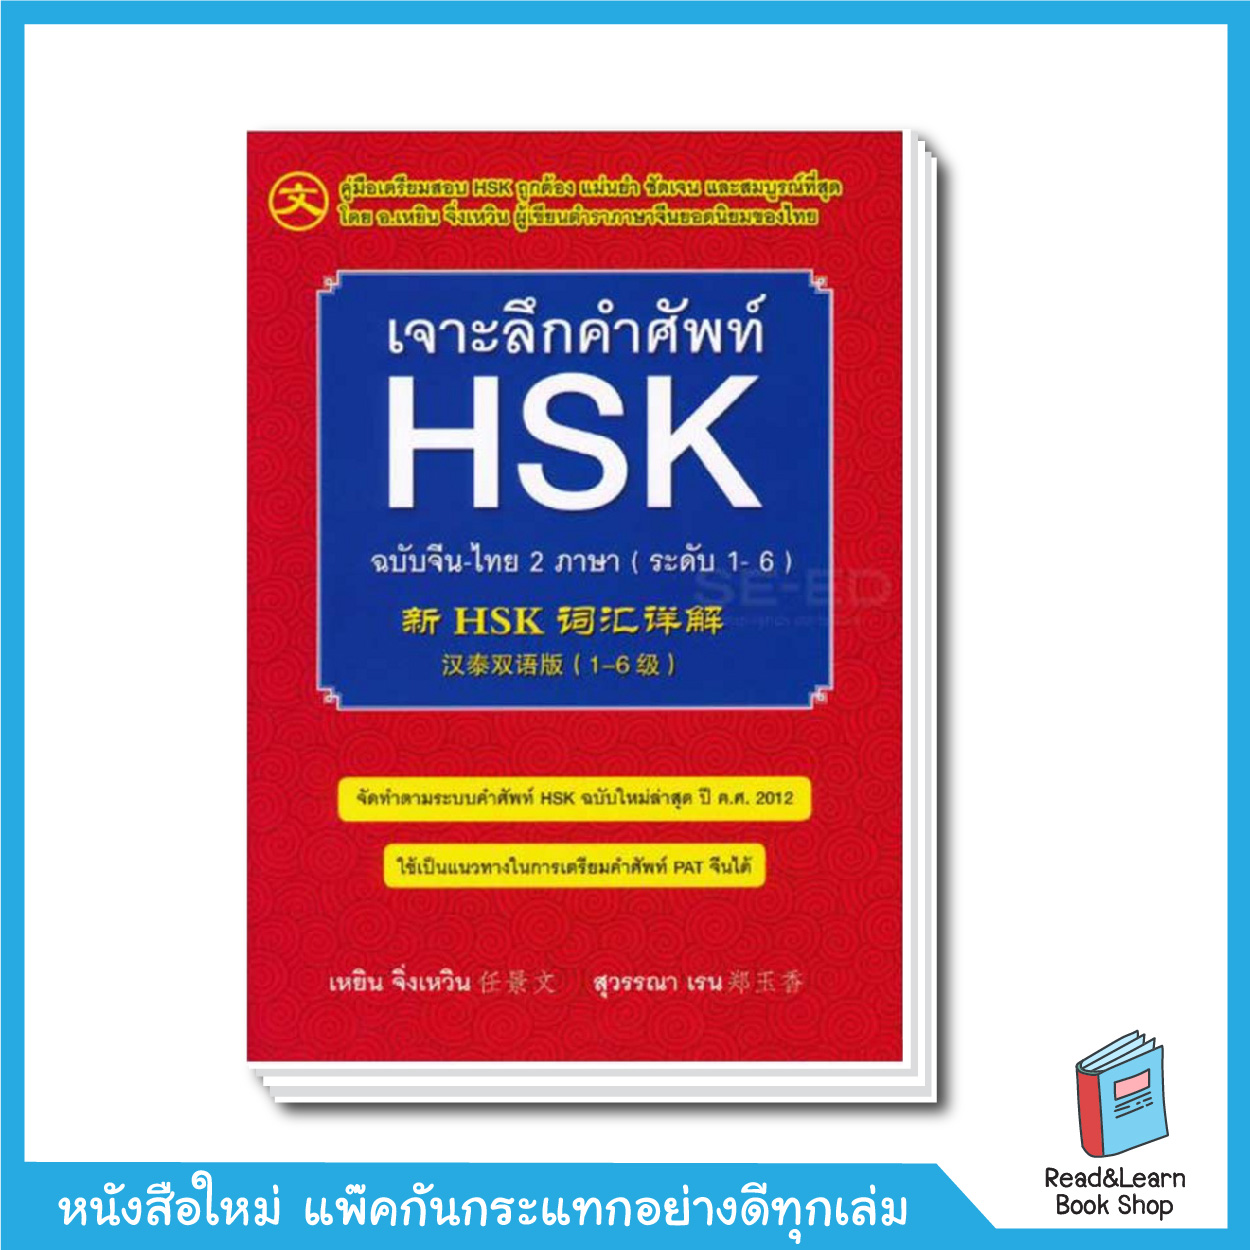 เจาะลึกคำศัพท์ HSK ฉบับจีน-ไทย 2 ภาษา (ระดับ 1-6)